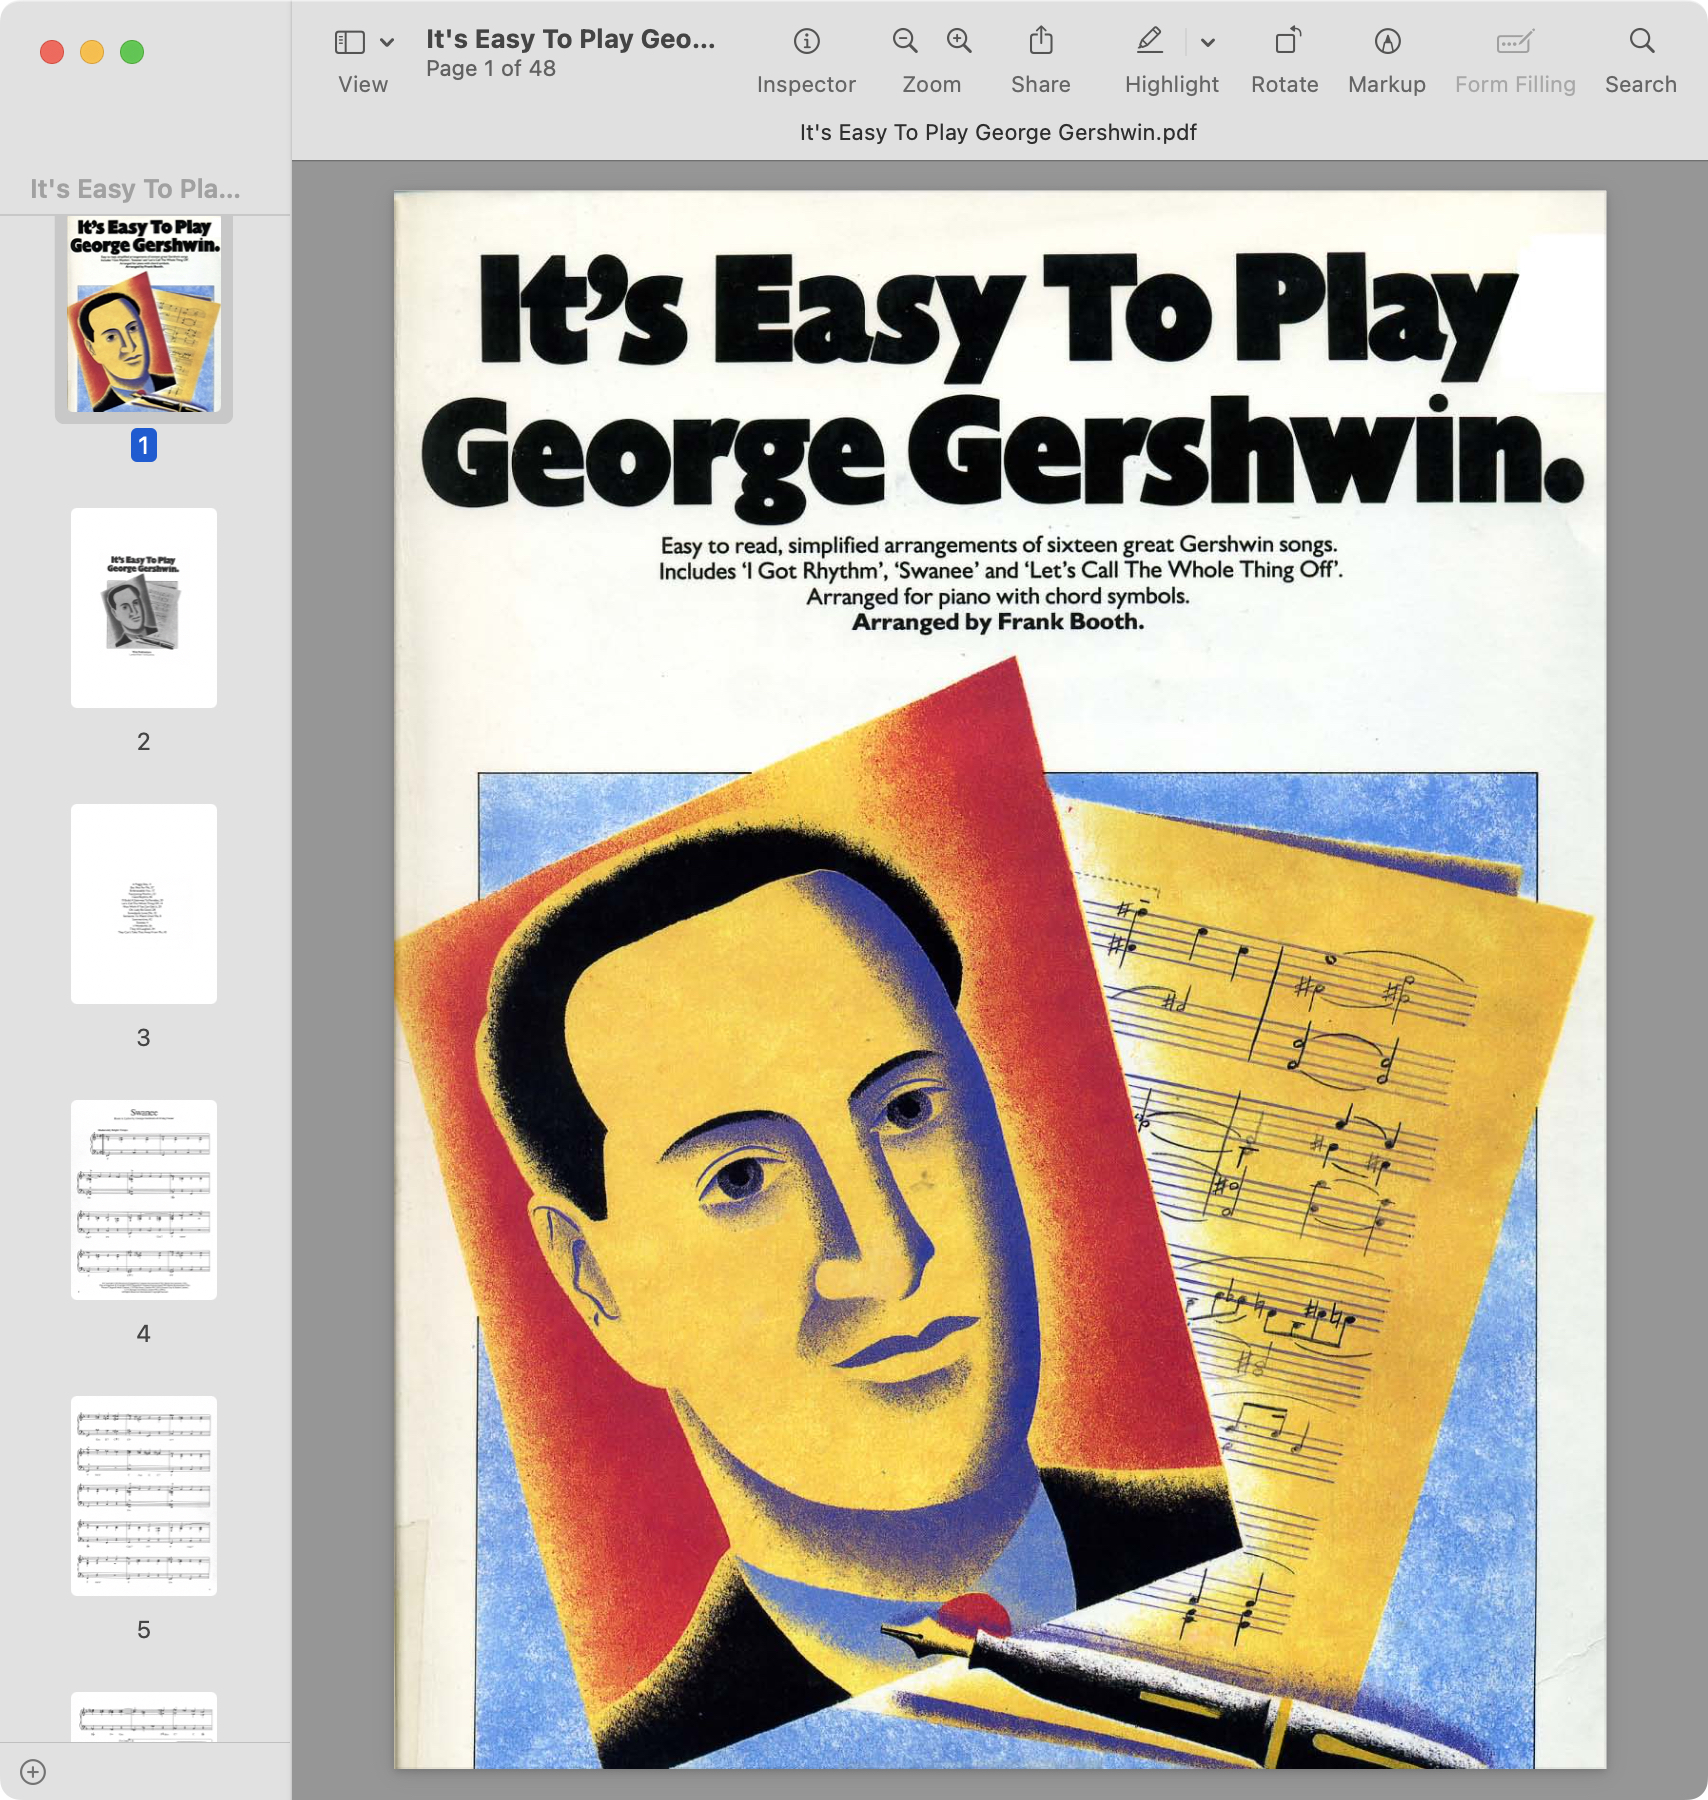 It's Easy To Play George Gershwin.jpg